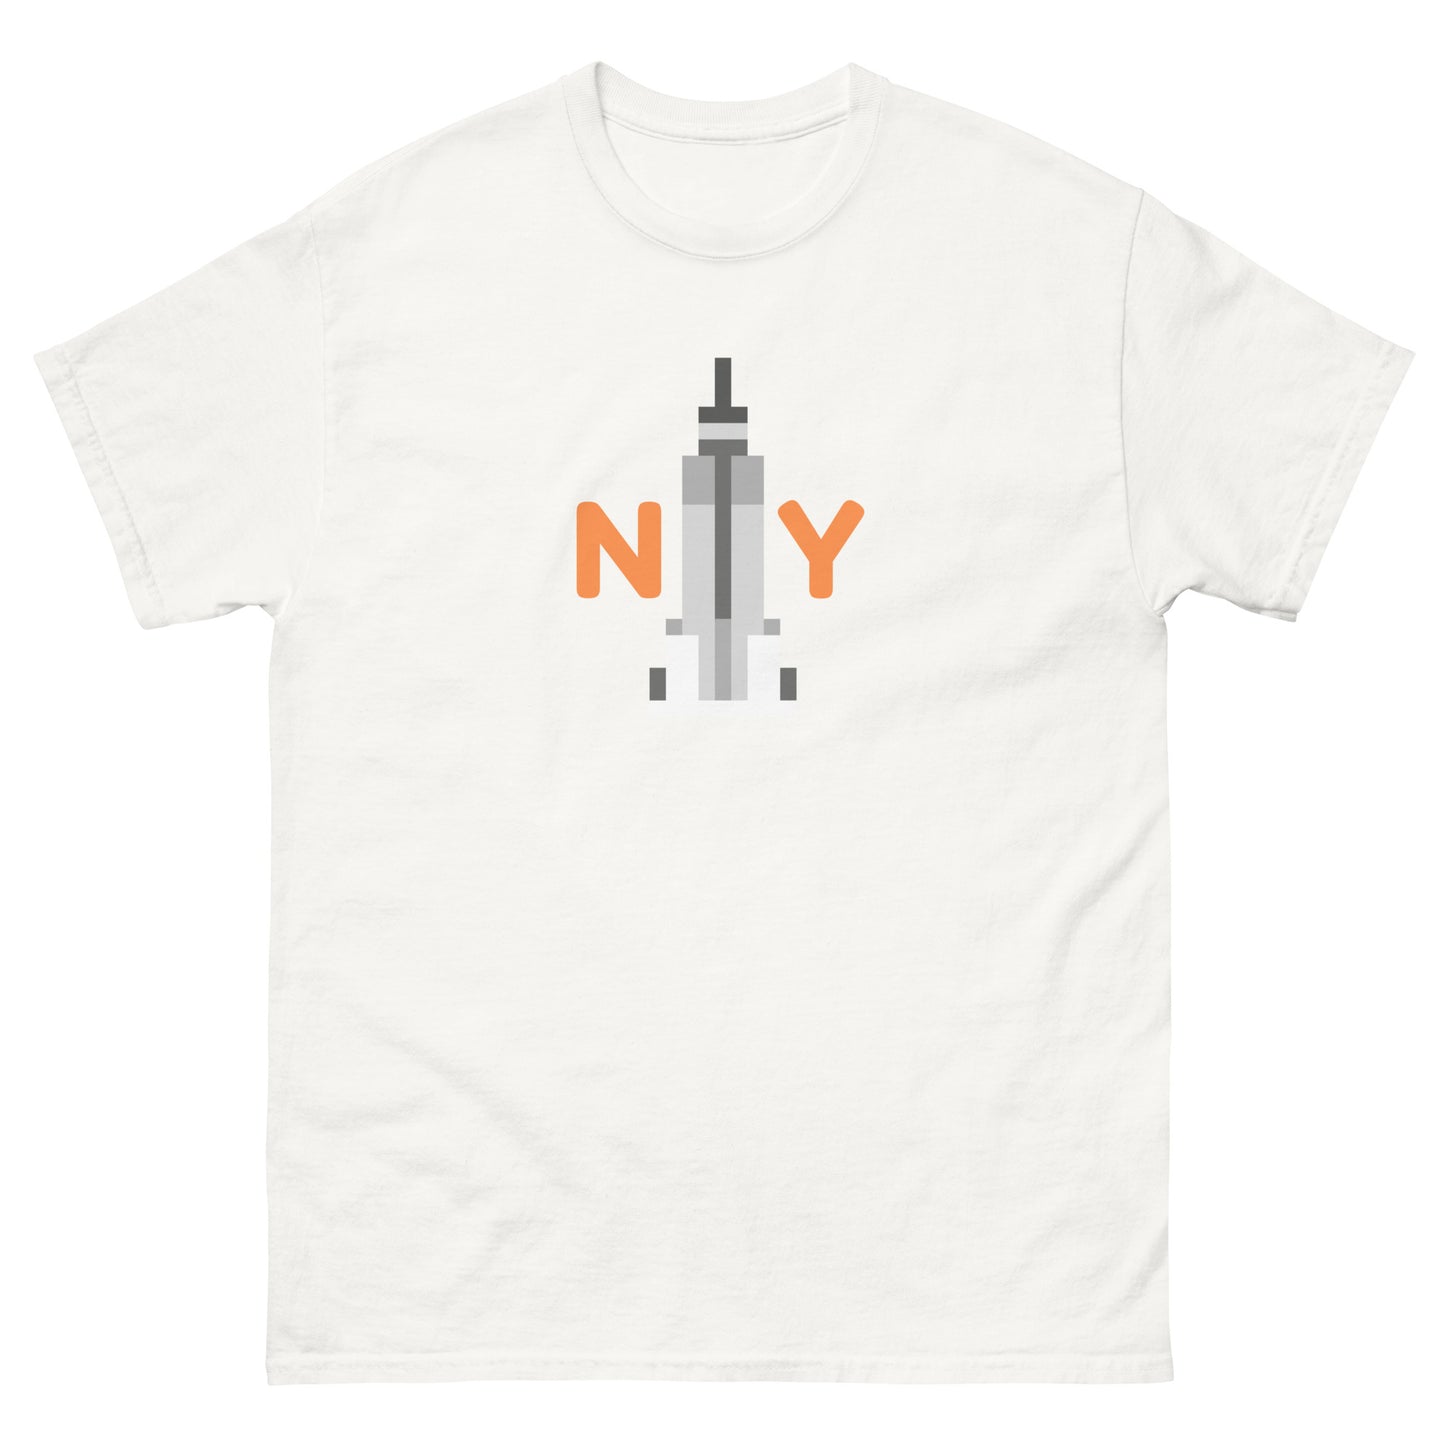 NY Alongside New York Skyscraper - classic tee